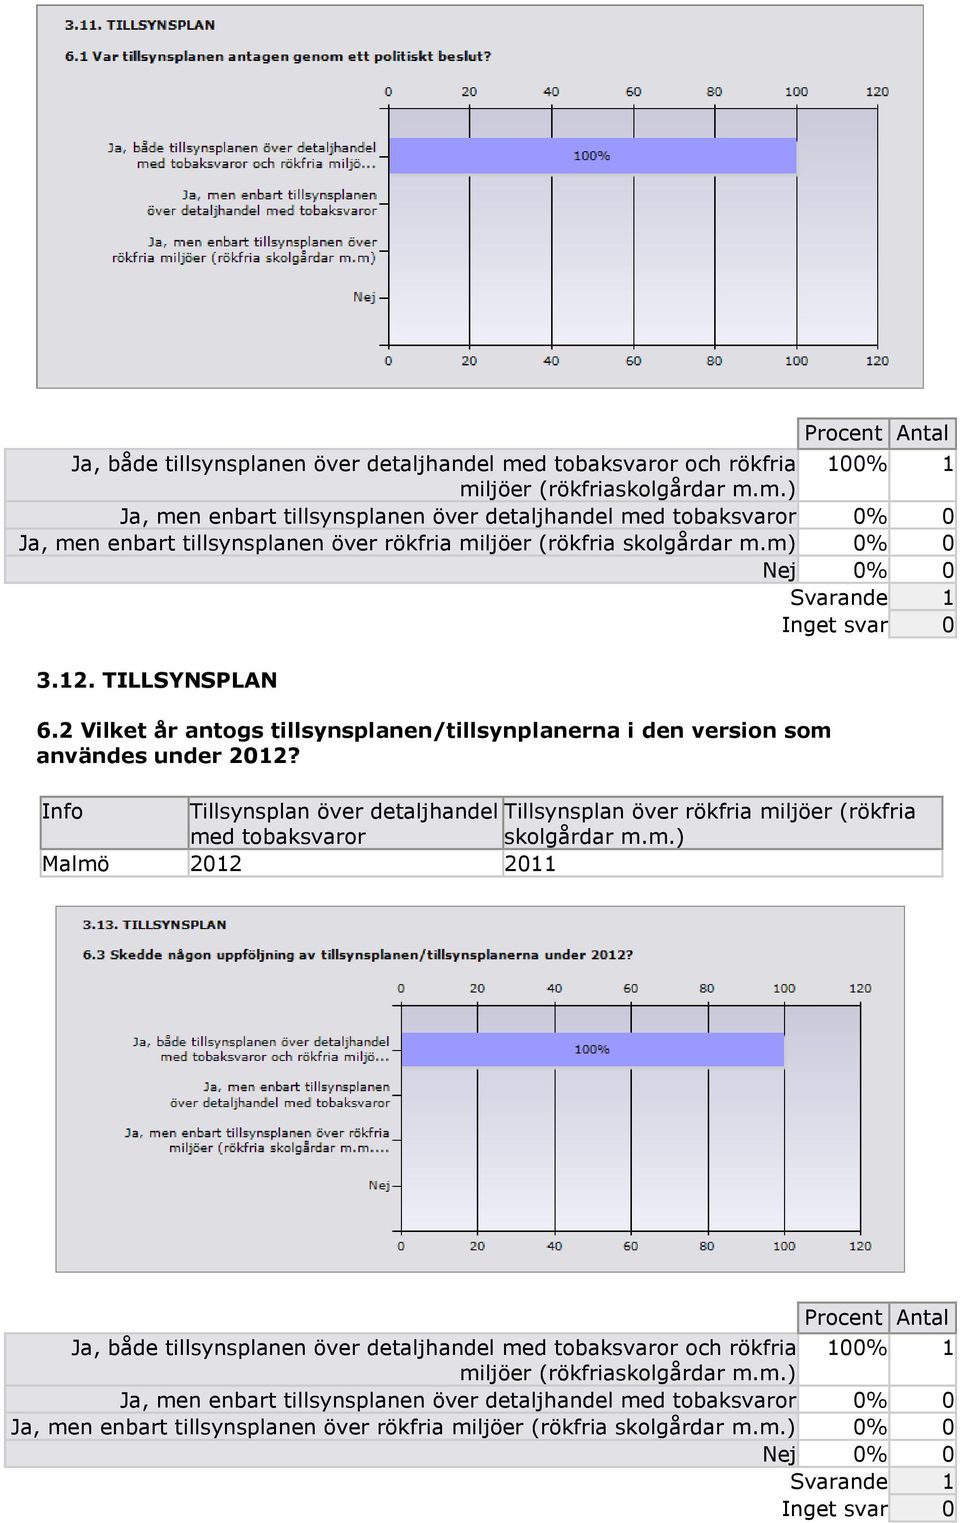 Tillsynsplan över detaljhandel Tillsynsplan över rökfria miljöer (rökfria med tobaksvaror skolgårdar m.m.) Malmö 2012 2011 m.) 0% 0 Nej 0% 0 Inget svar 0